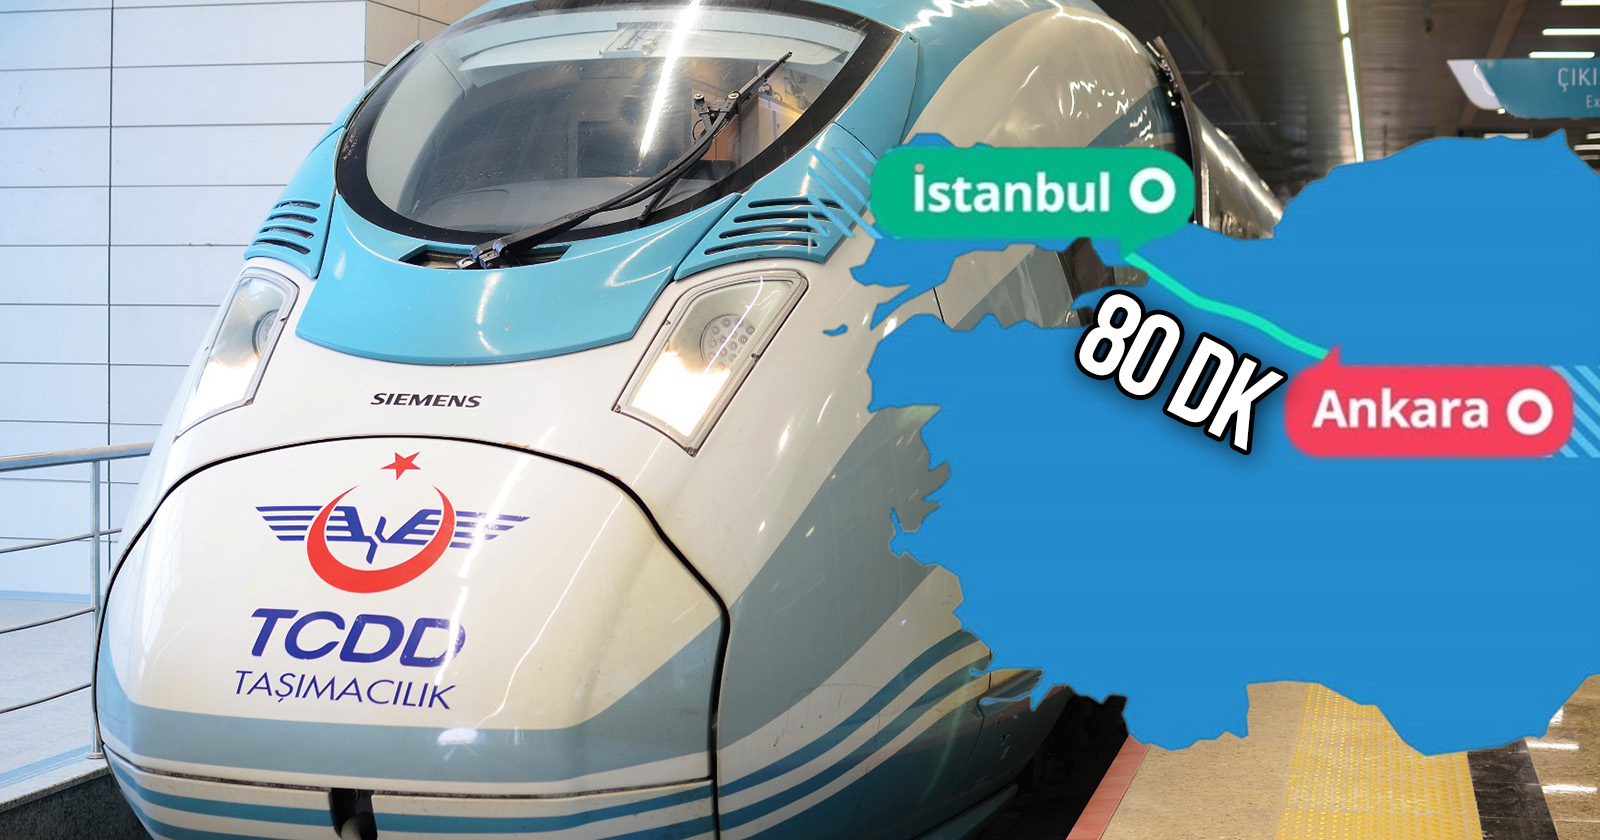 İstanbul-Ankara arası süper hızlı tren